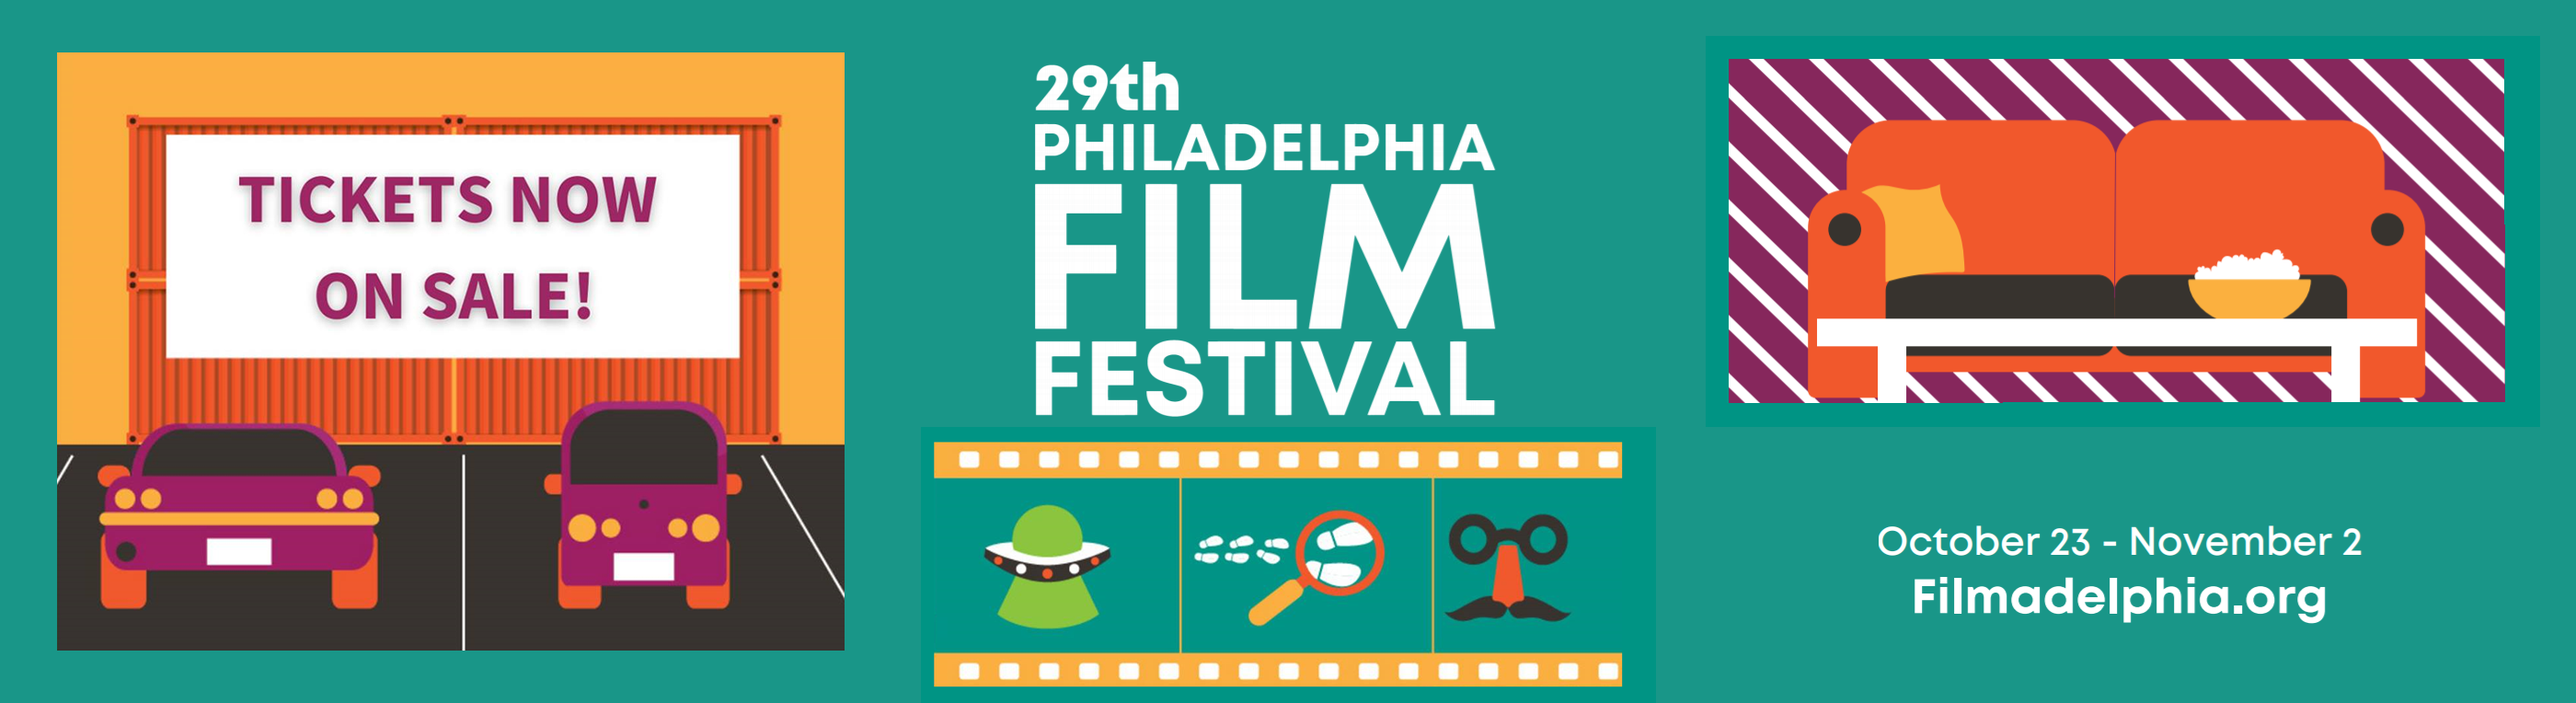 Now Streaming The 29th Philadelphia Film Festival